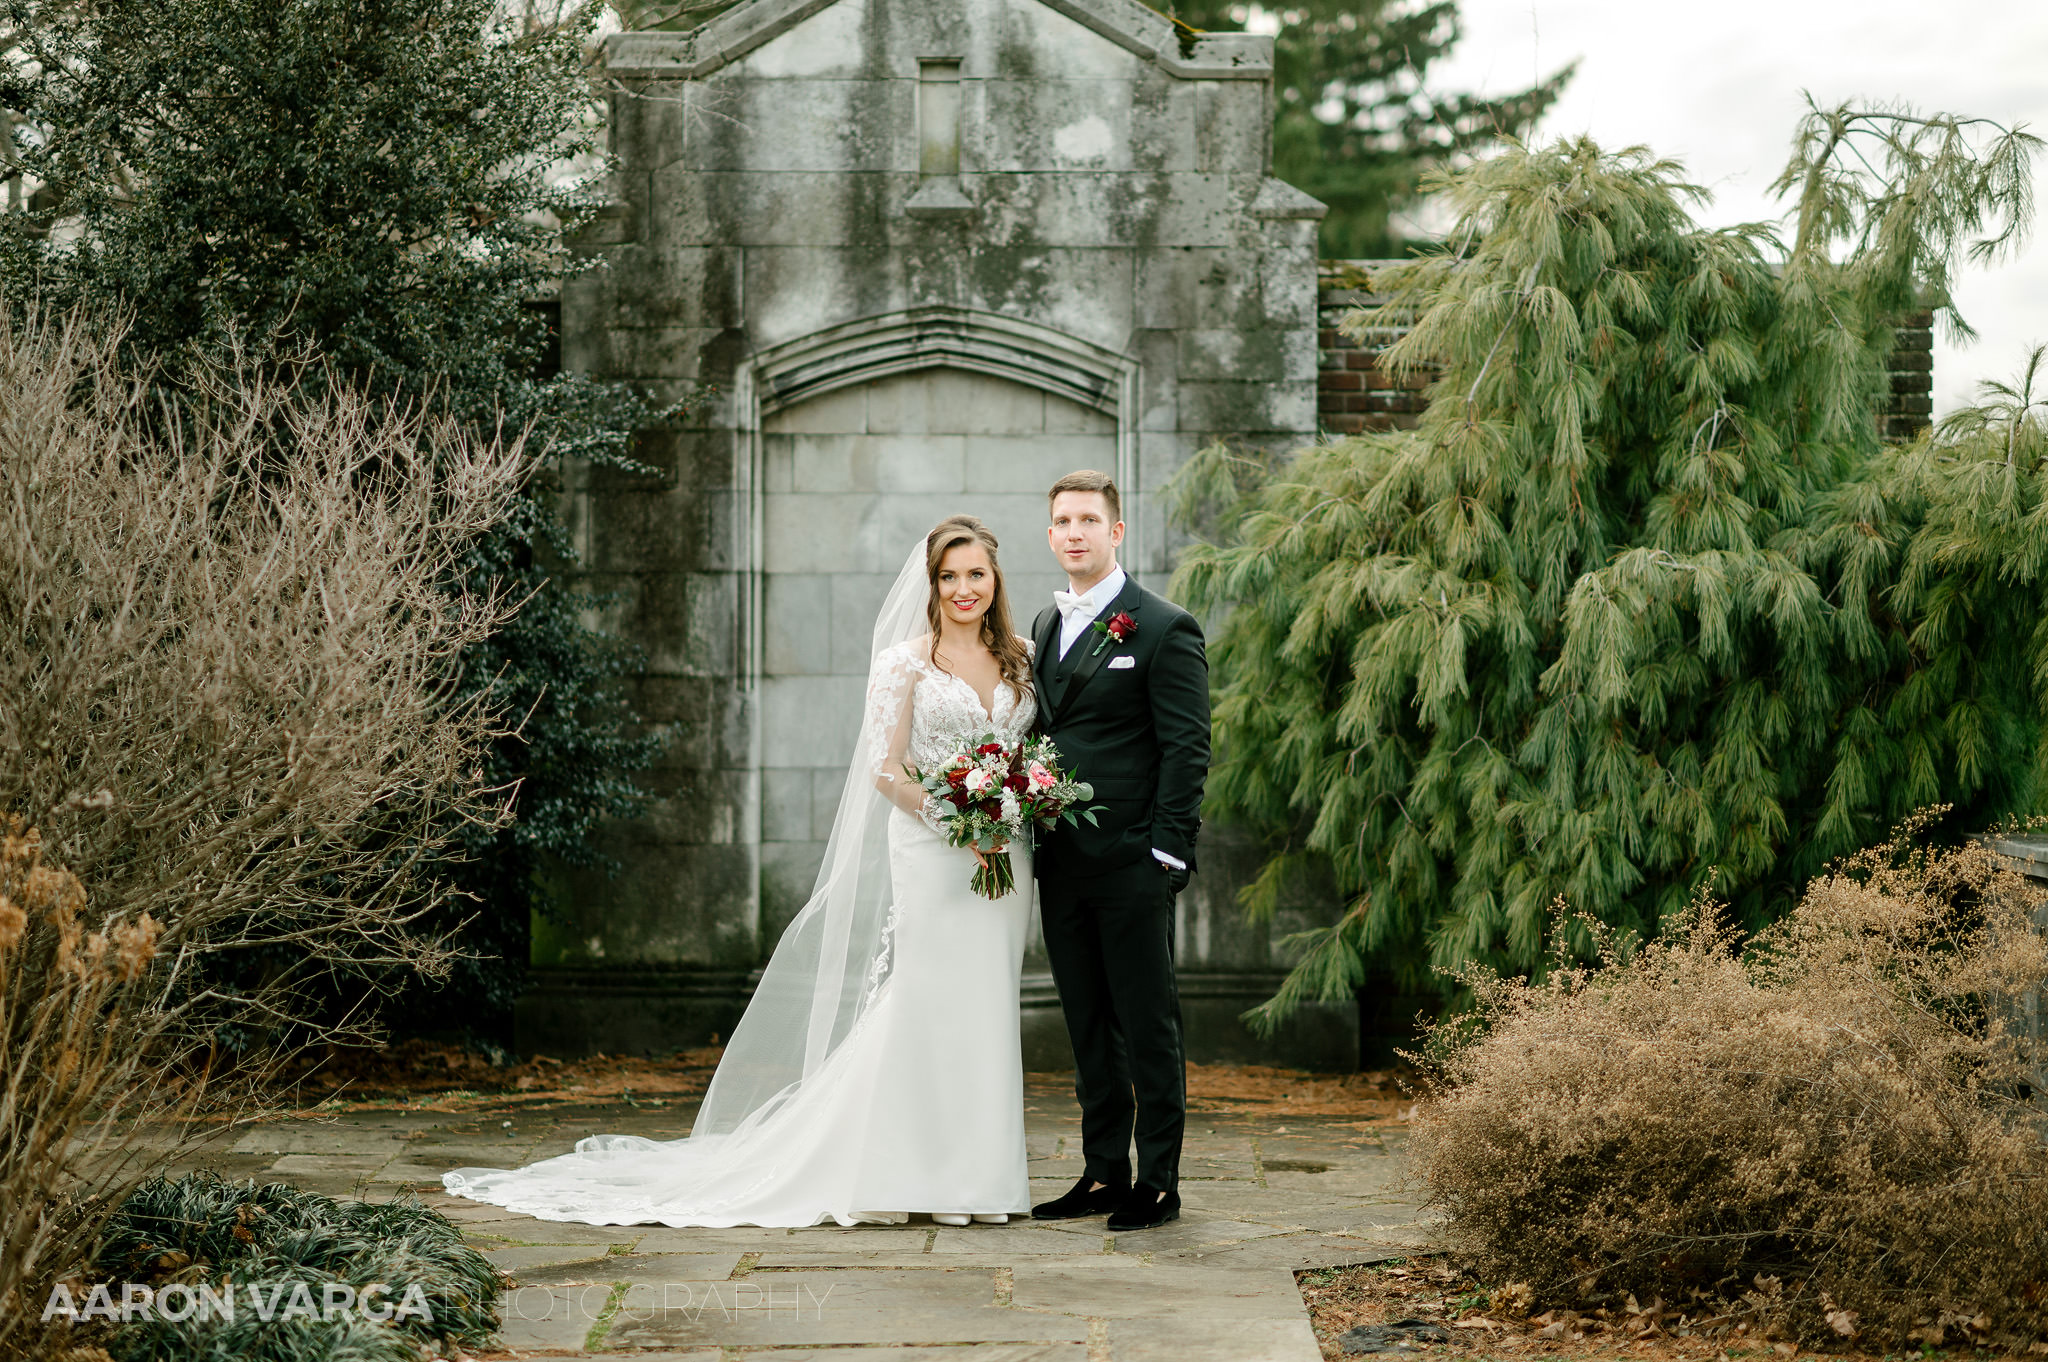 43 mellon park winter wedding december - Julia + Ryan | PPG Wintergarden Wedding Photos